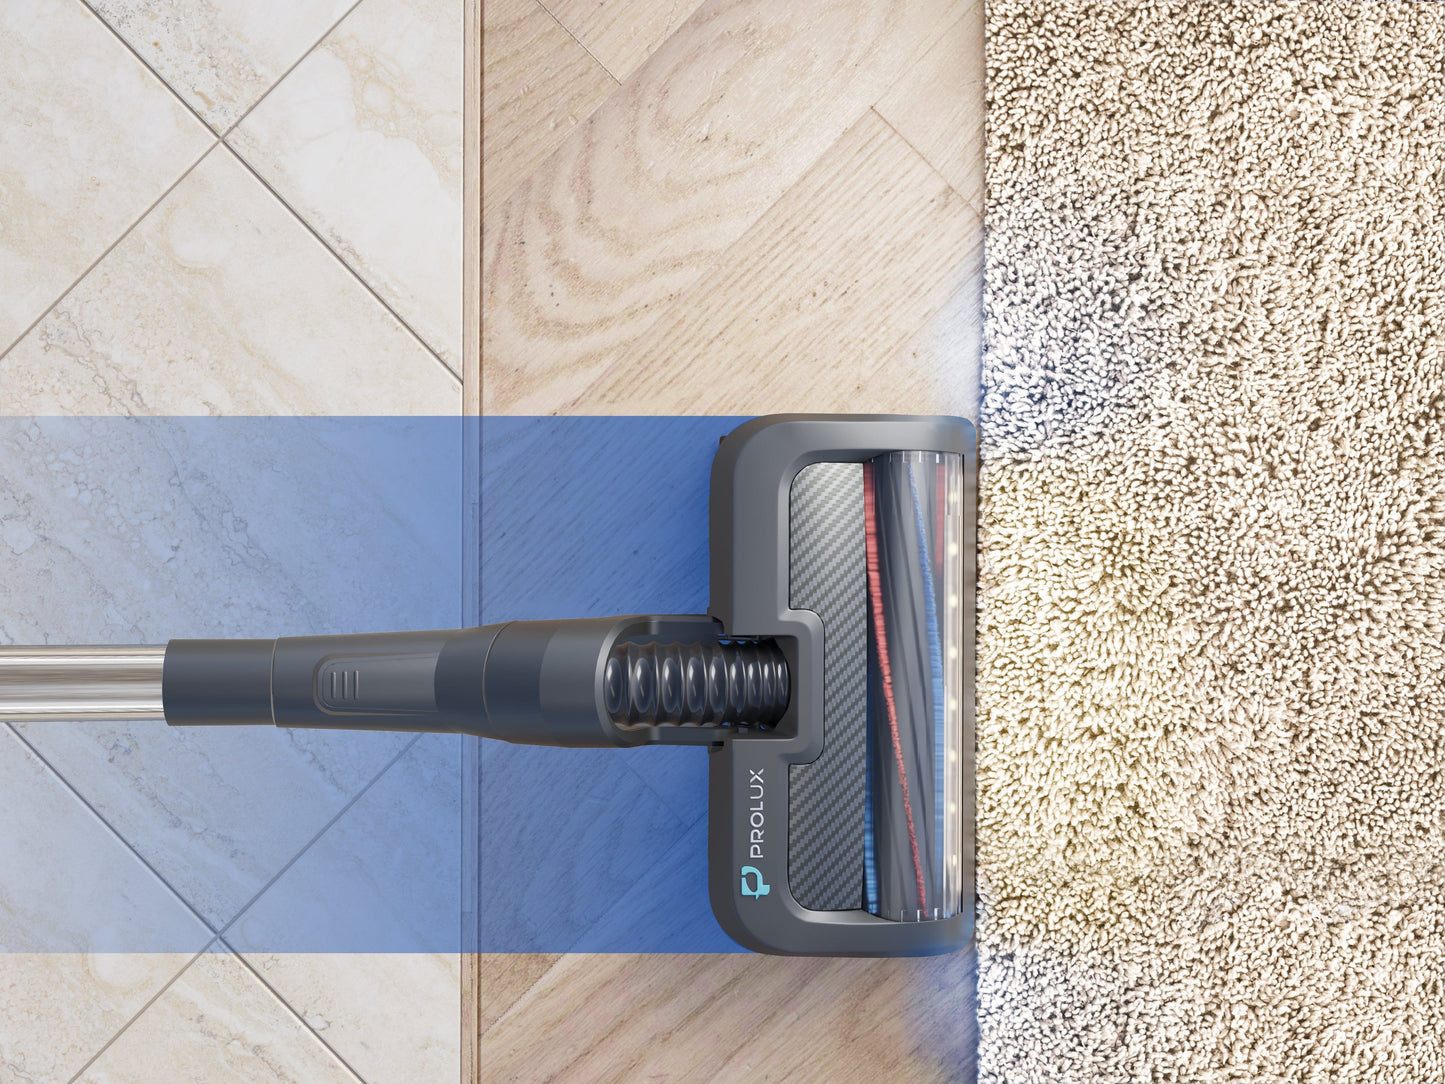 Prolux RS7 PET Cordless Handheld Stick Vacuum